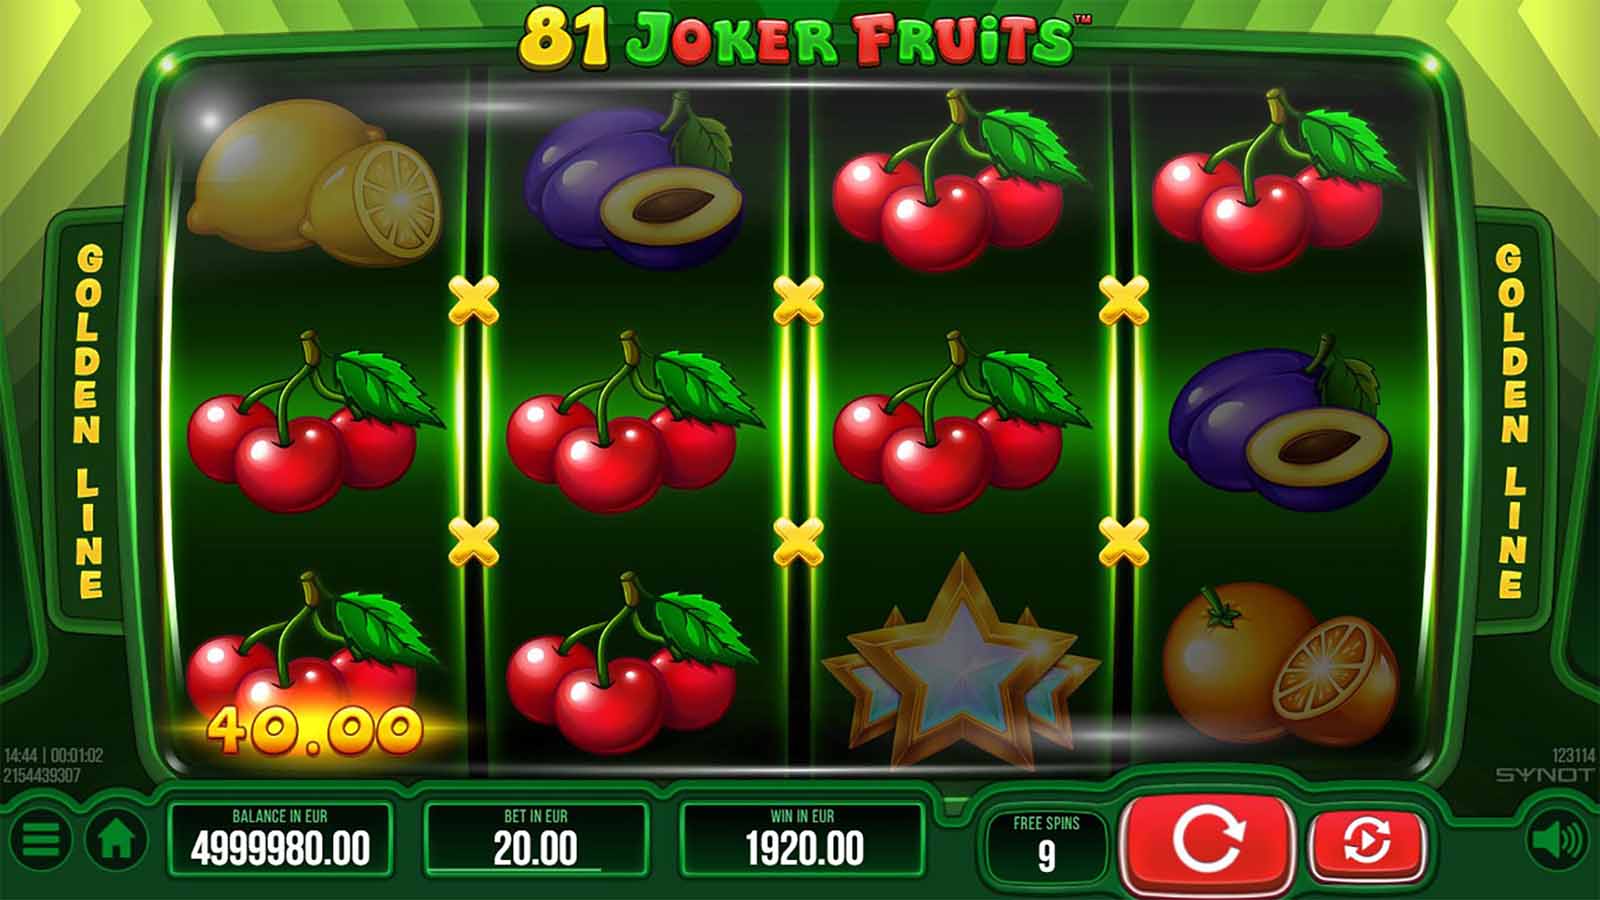 81 joker fruits